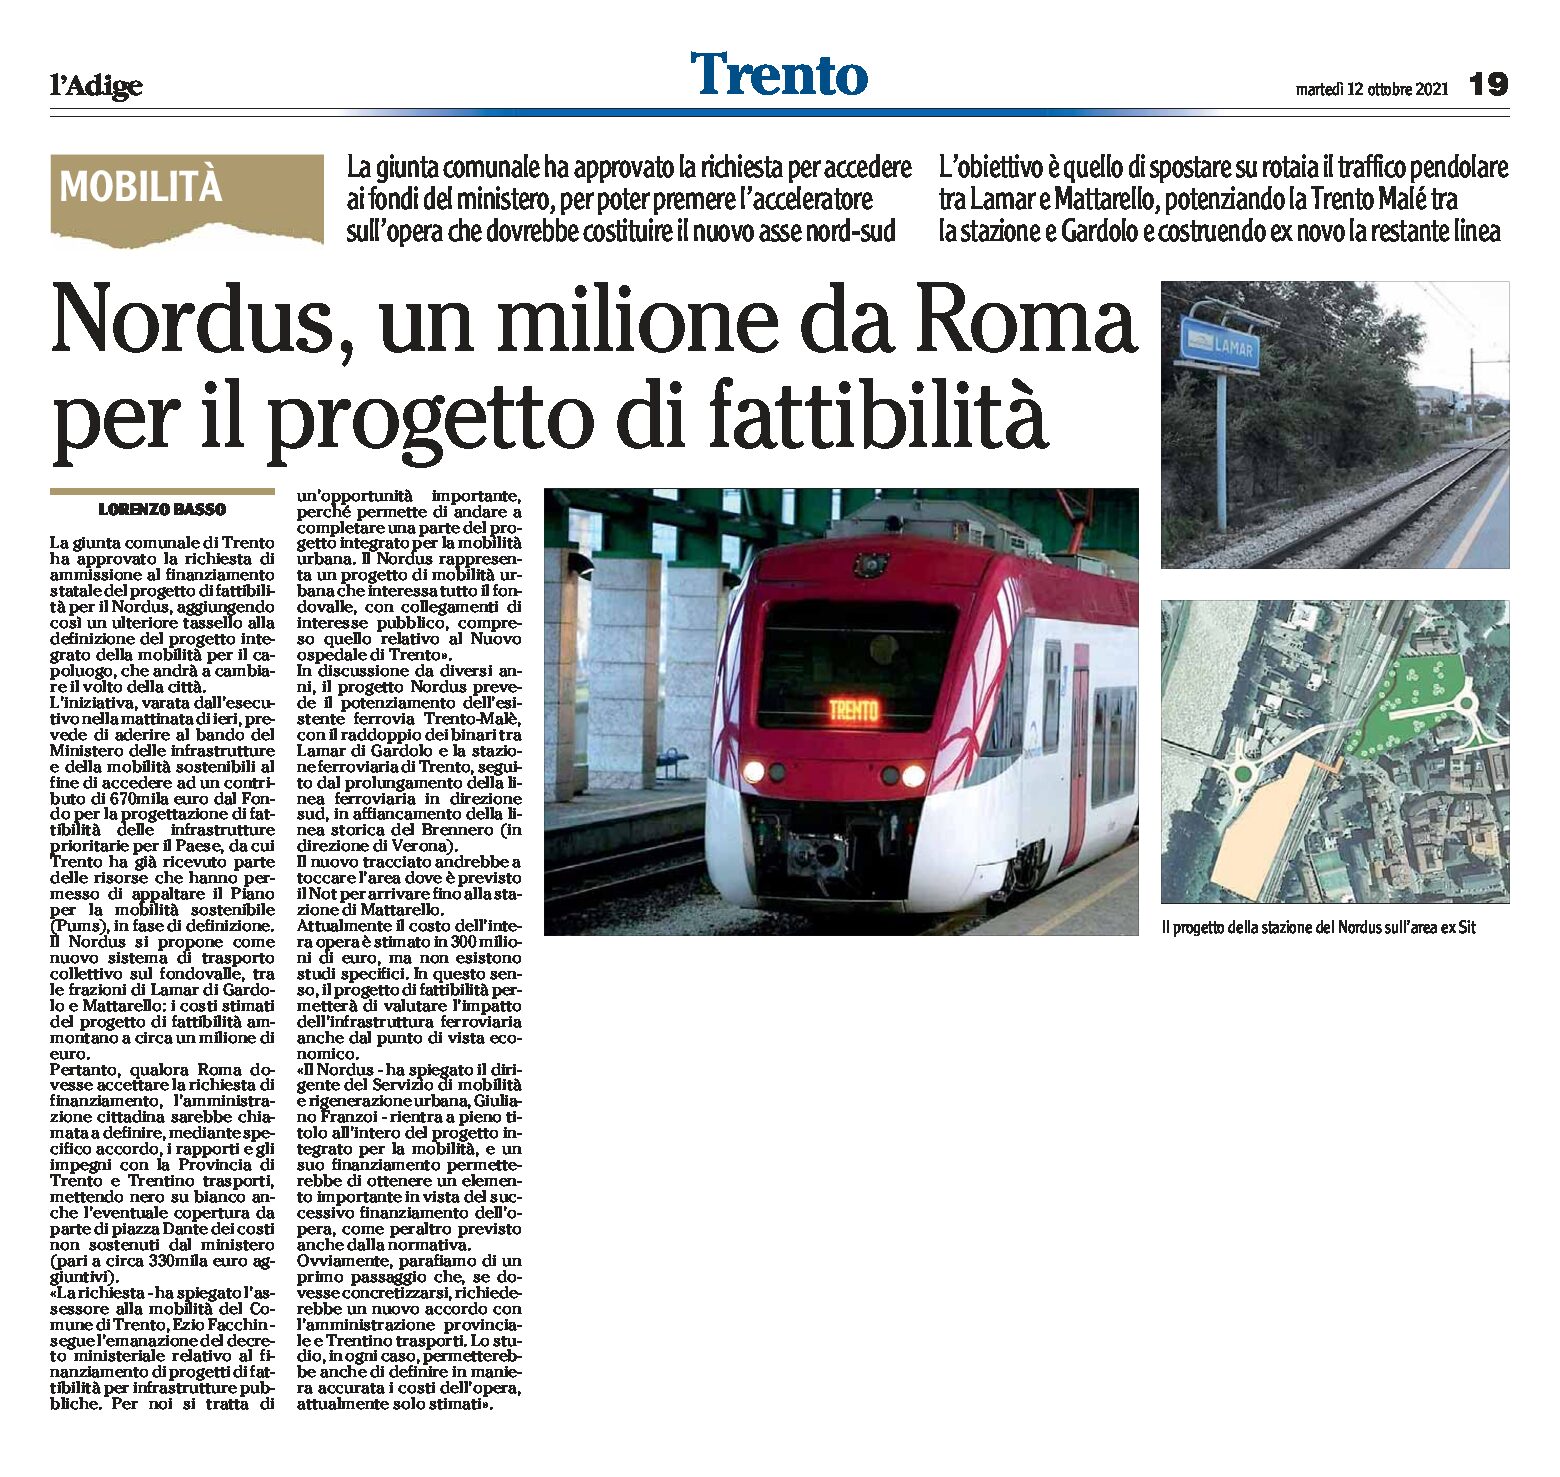 Trento, Nordus: un milione da Roma per il progetto di fattibilità